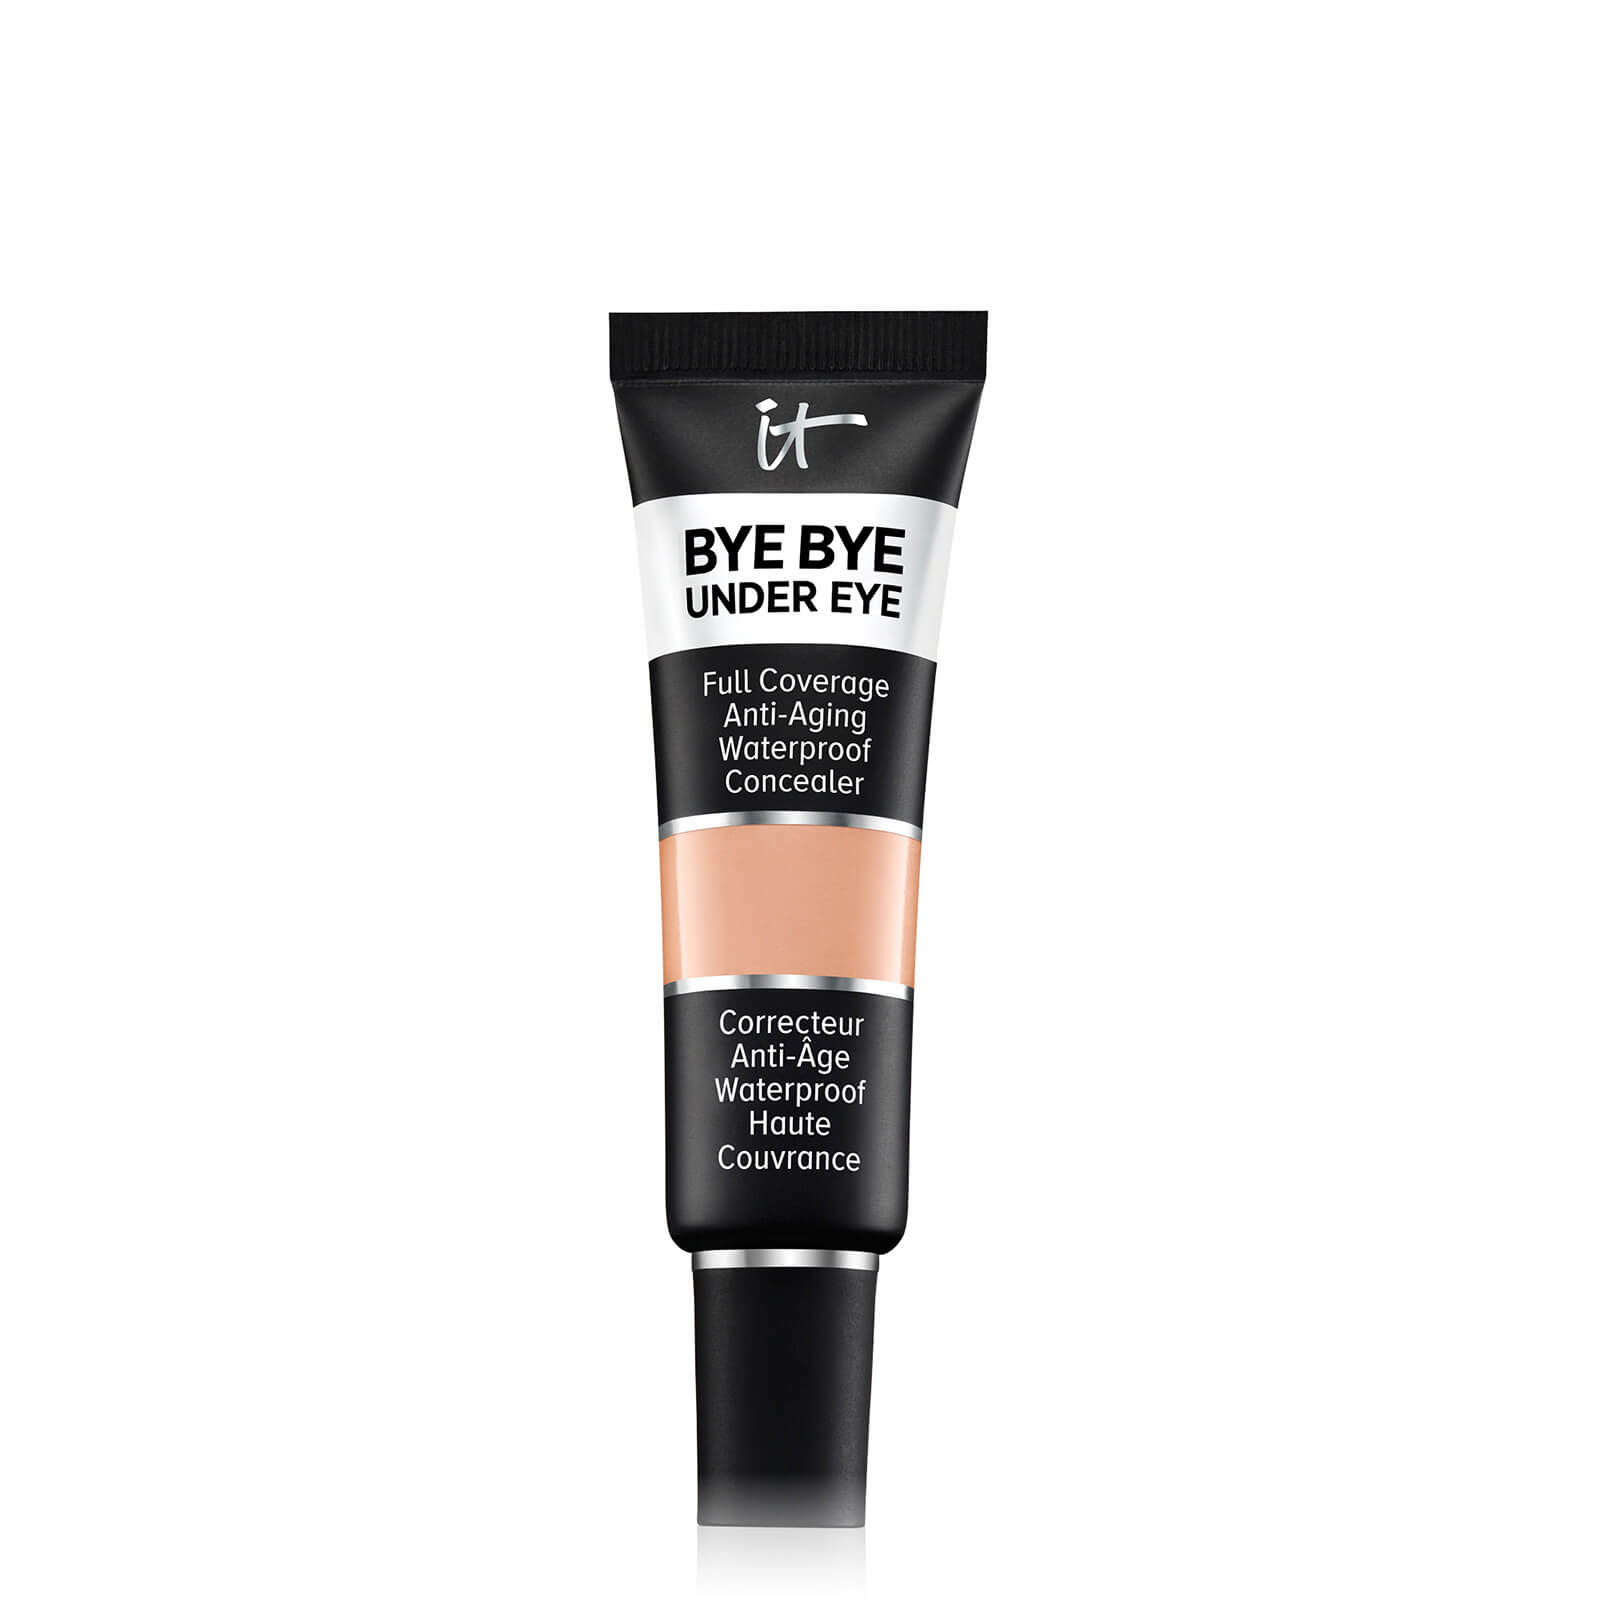 IT Cosmetics Bye Bye Under Eye Concealer 12ml (Various Shades) - Tan